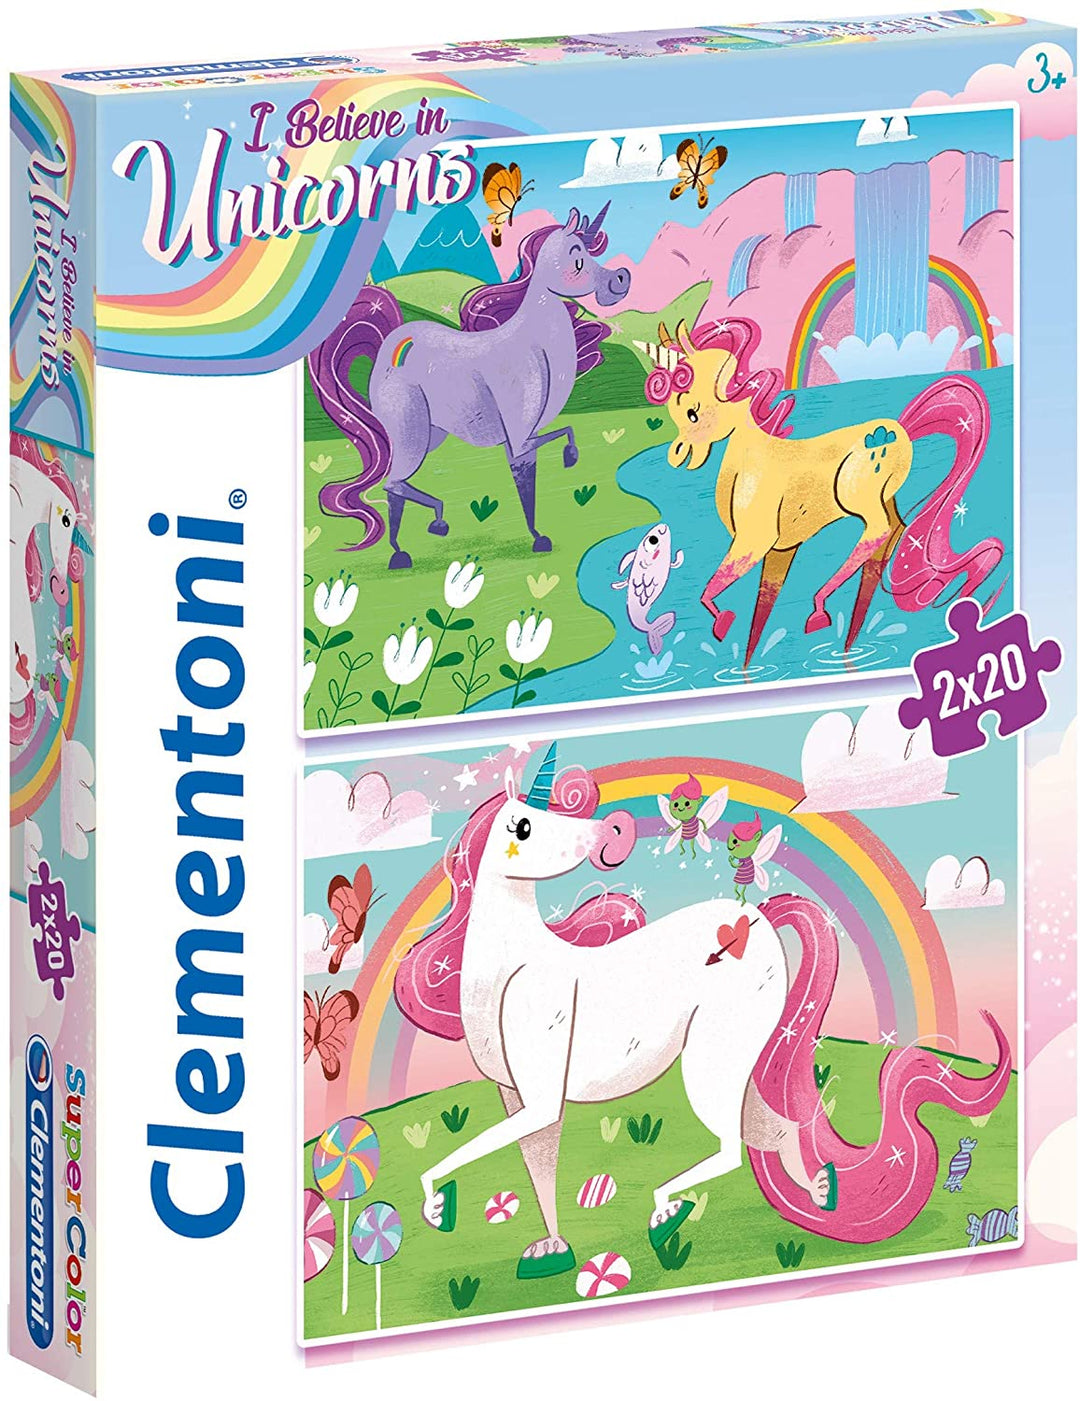 Clementoni - 24754 - Supercolor Unicorn Brilliant - 2 x 20 Pieces Jigsaw Puzzle for children